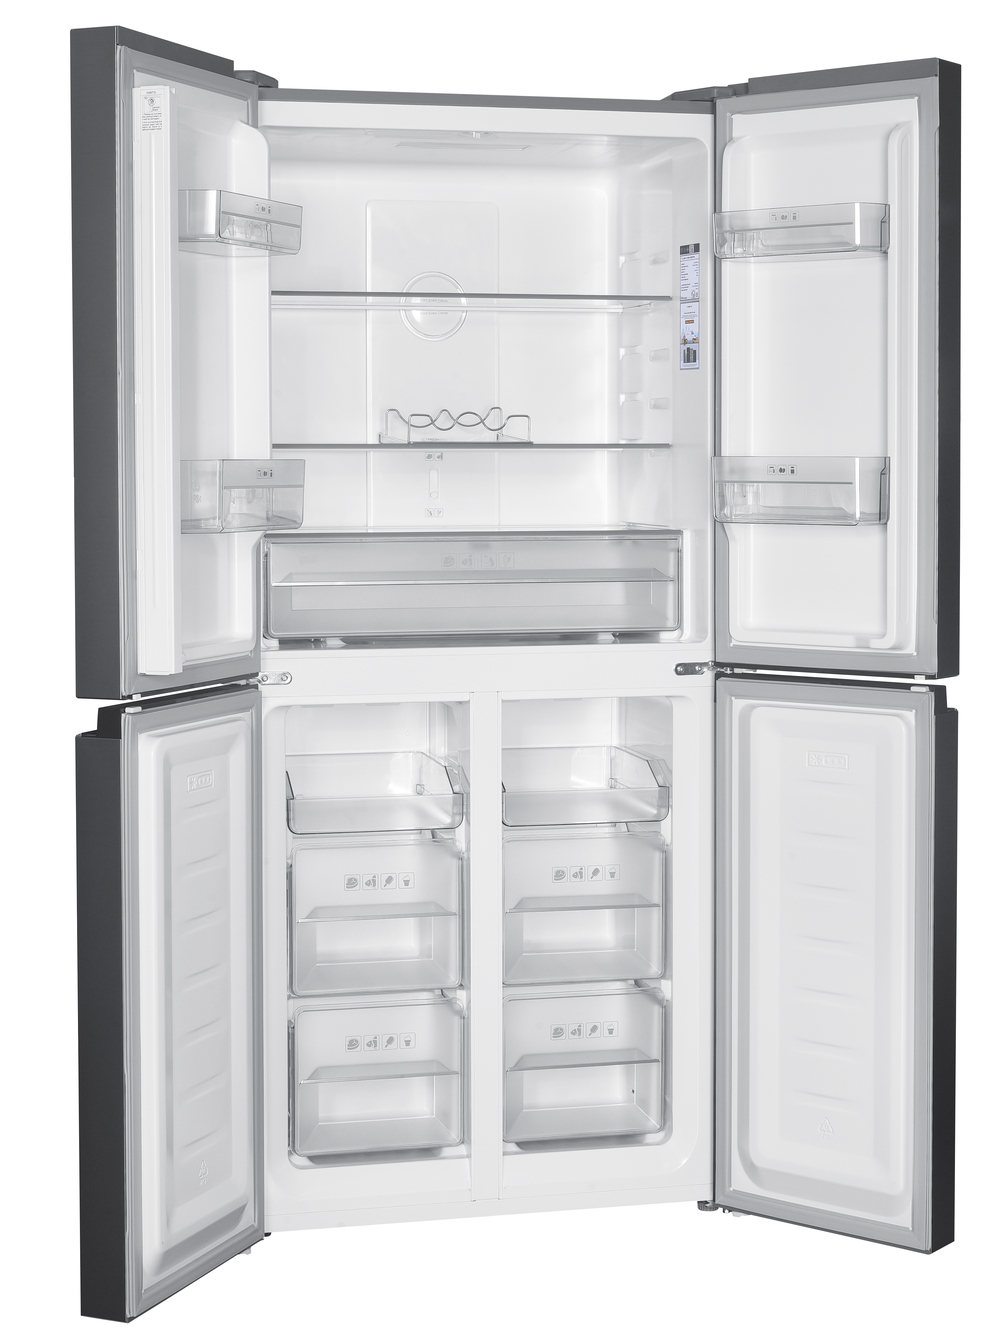 Tủ lạnh 4 cửa Inverter 362L COEX RM-4007MIS (Inox bạc)